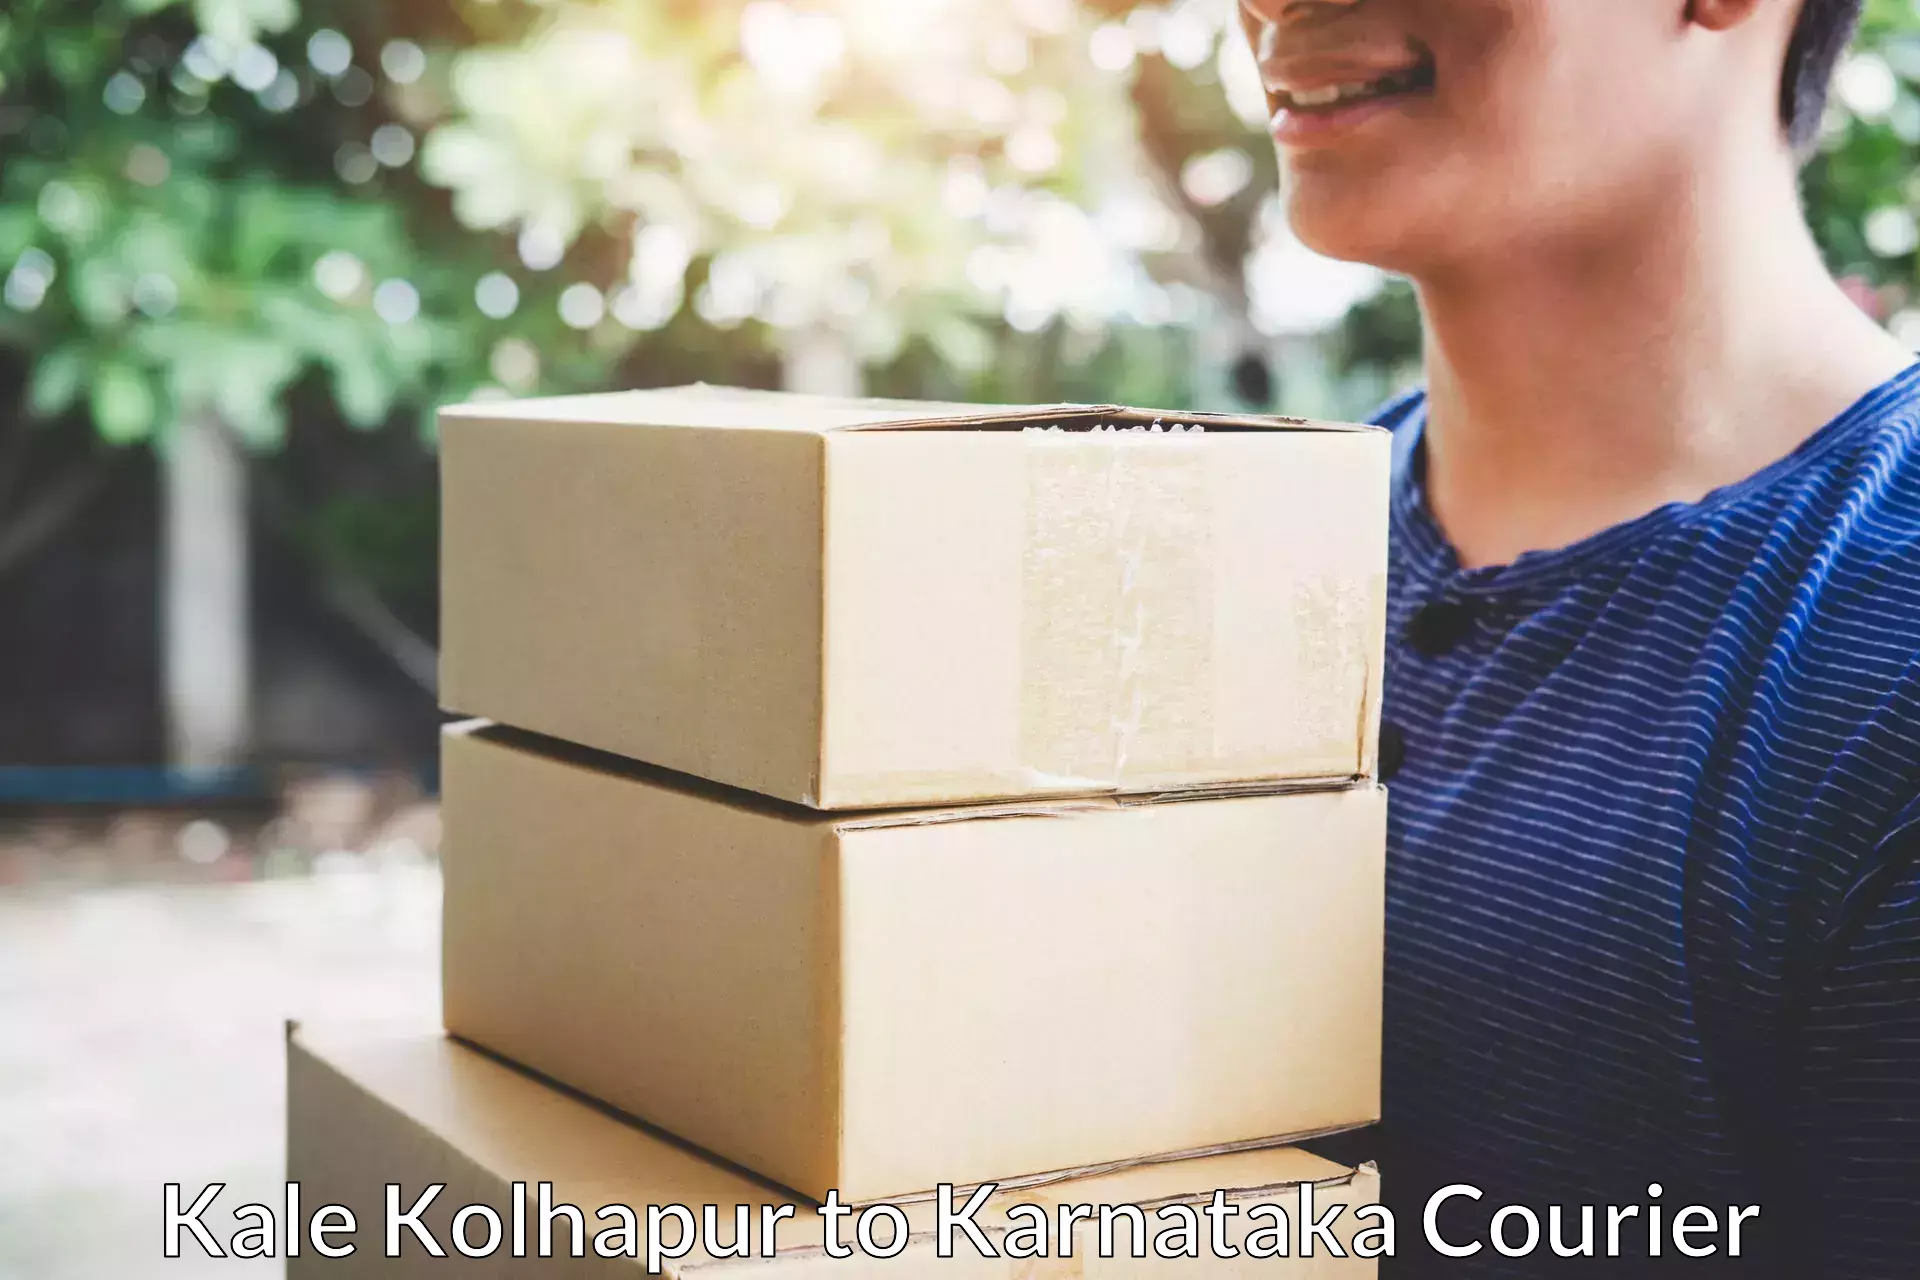 Skilled furniture transporters Kale Kolhapur to yedrami